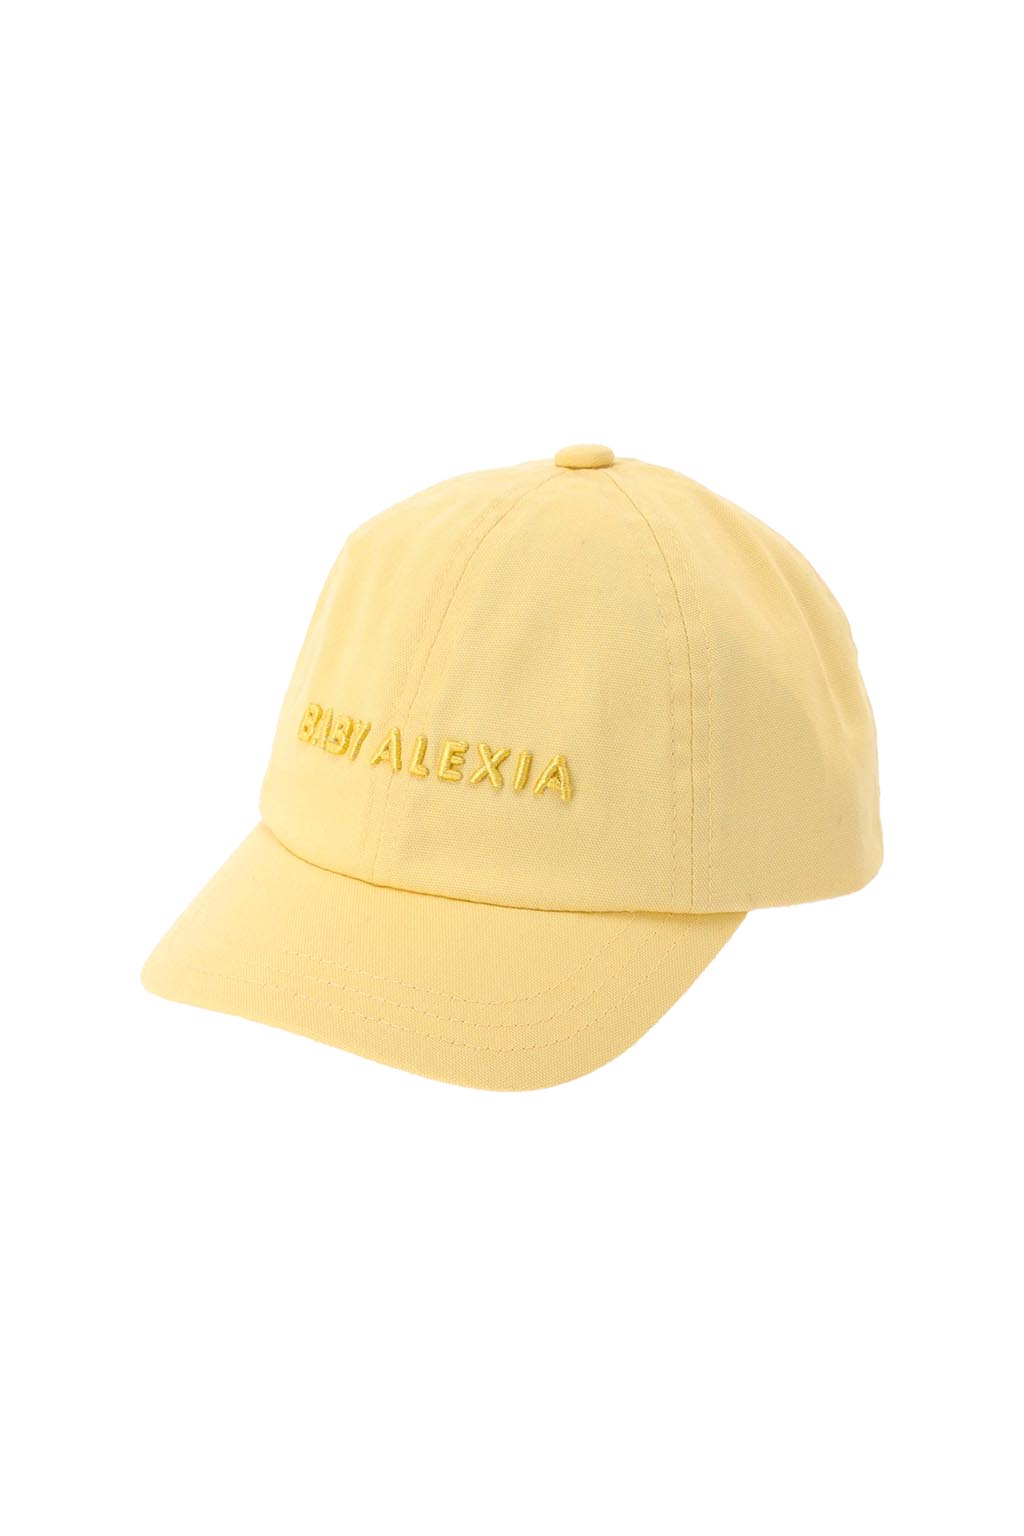 baby-alexia-embroidery-center-logo-cap-yellow-02